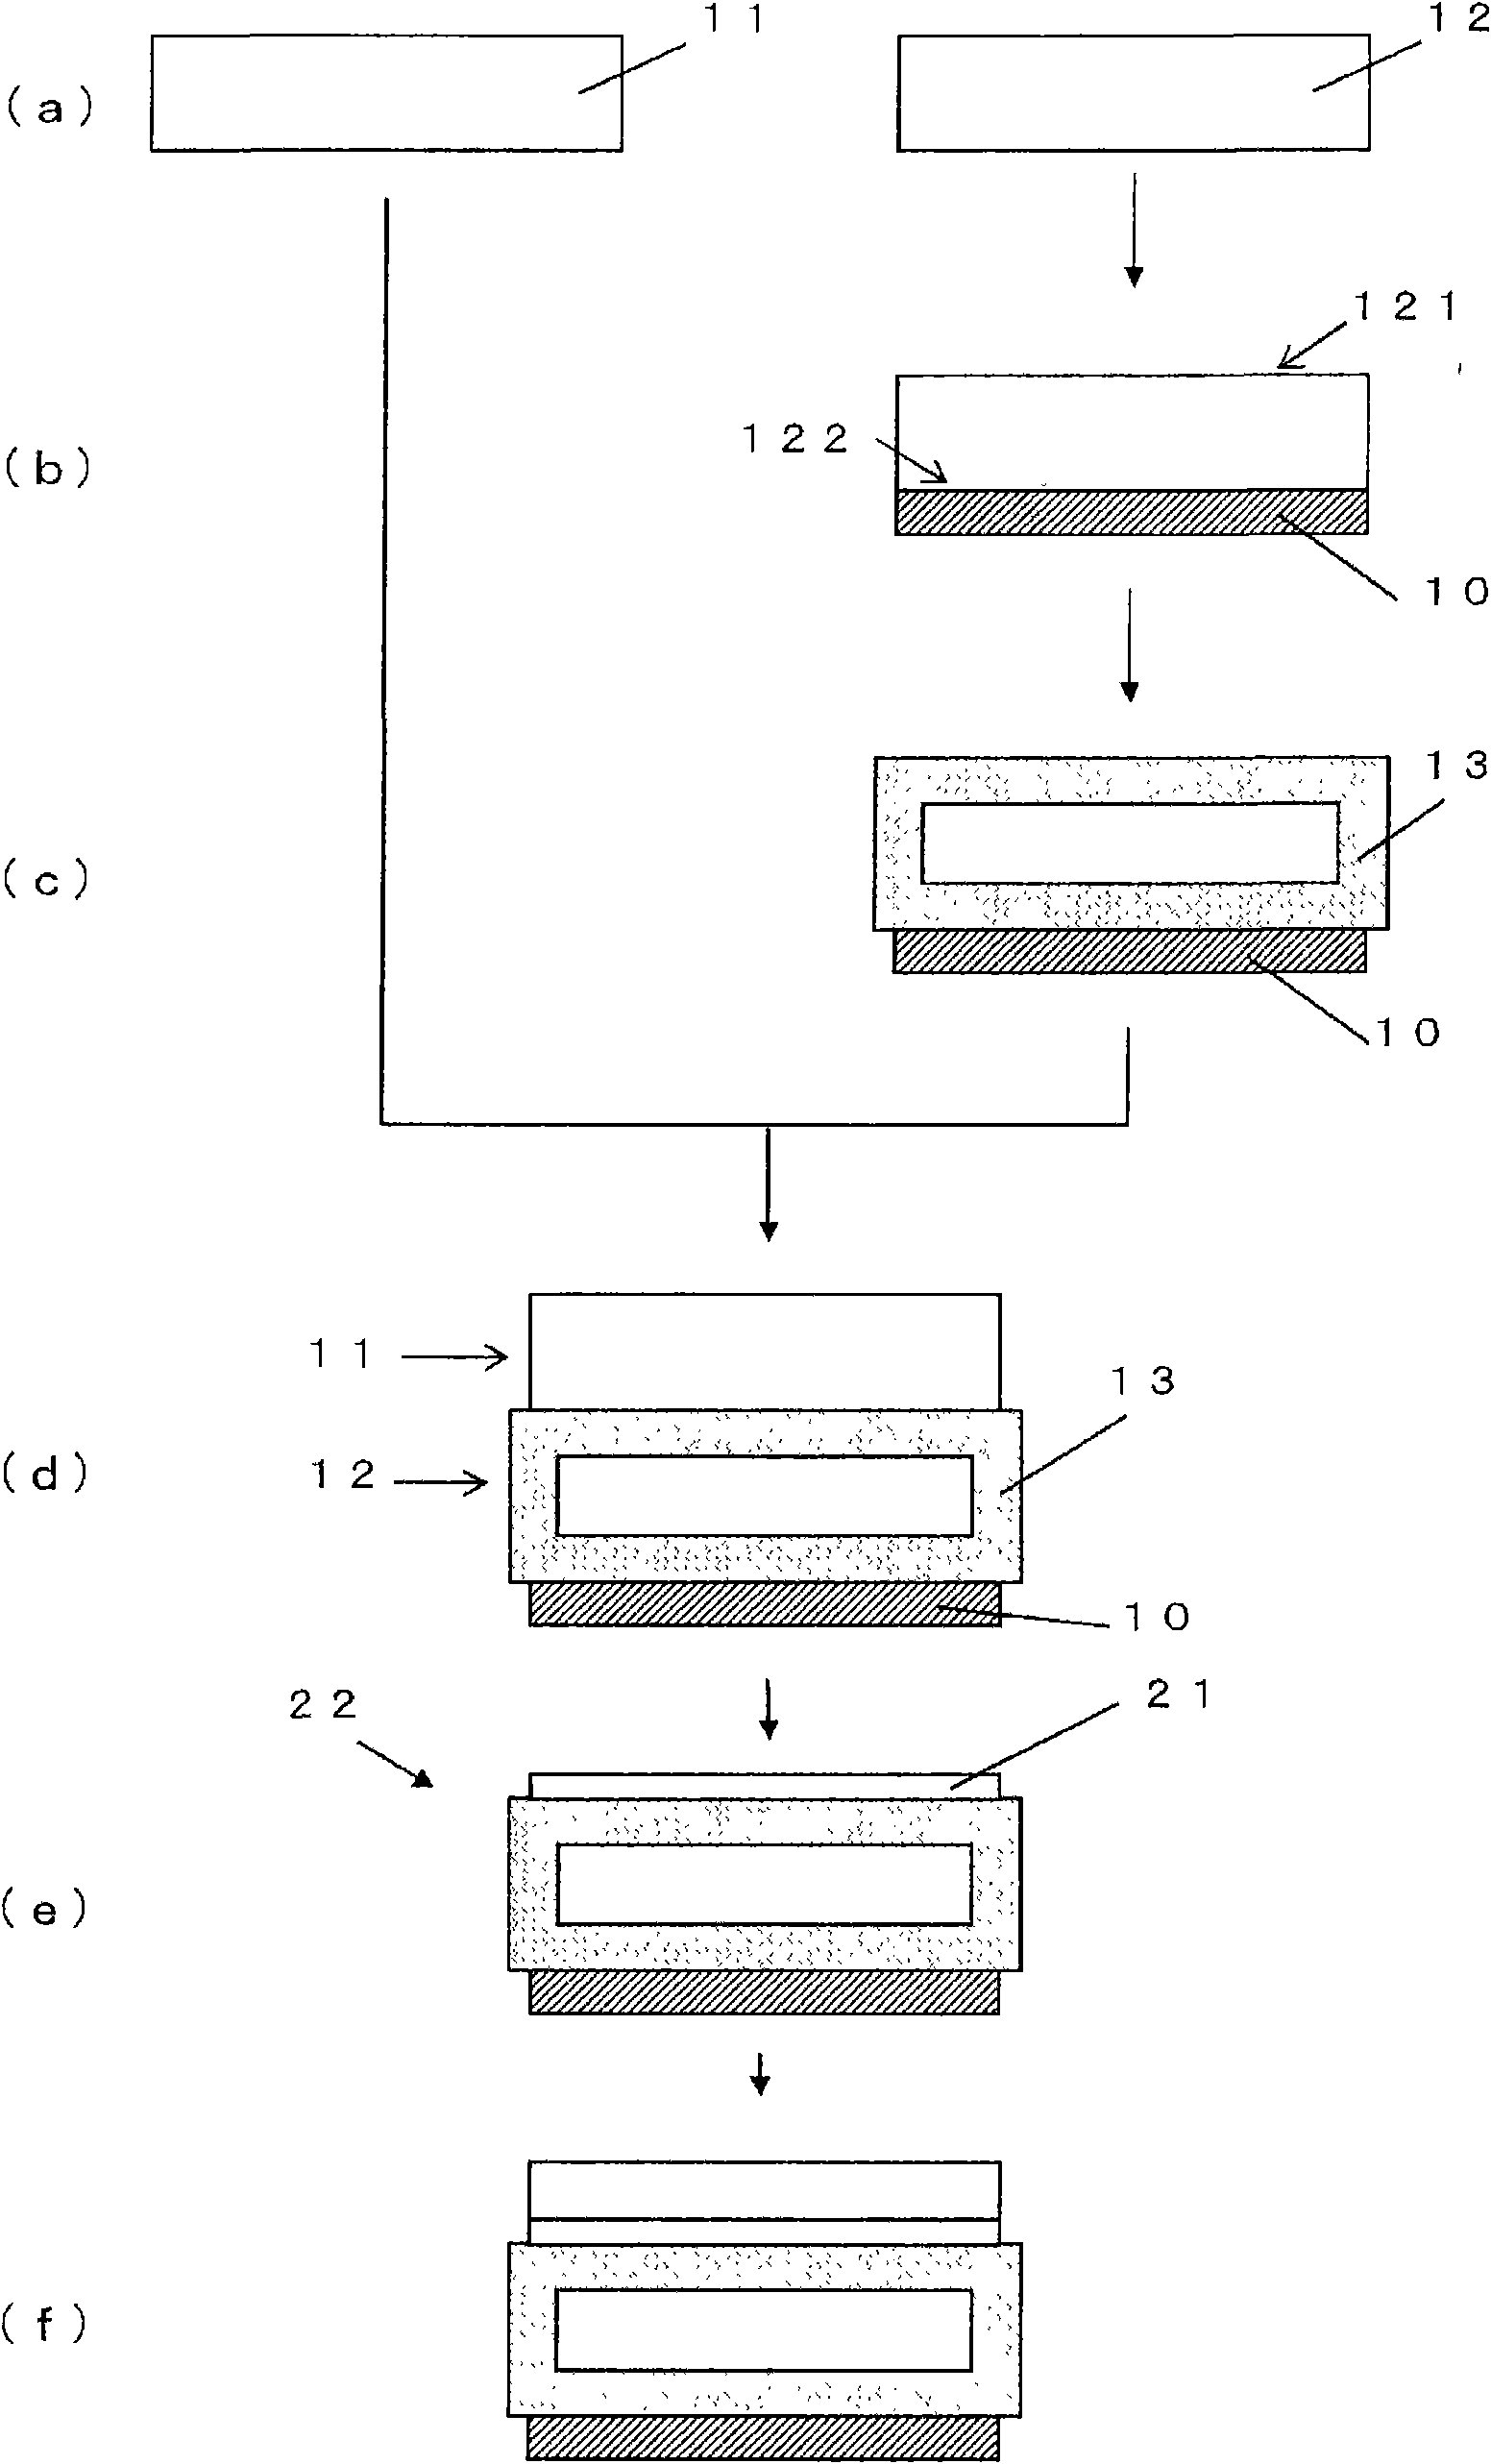 Soi wafer manufacturing method